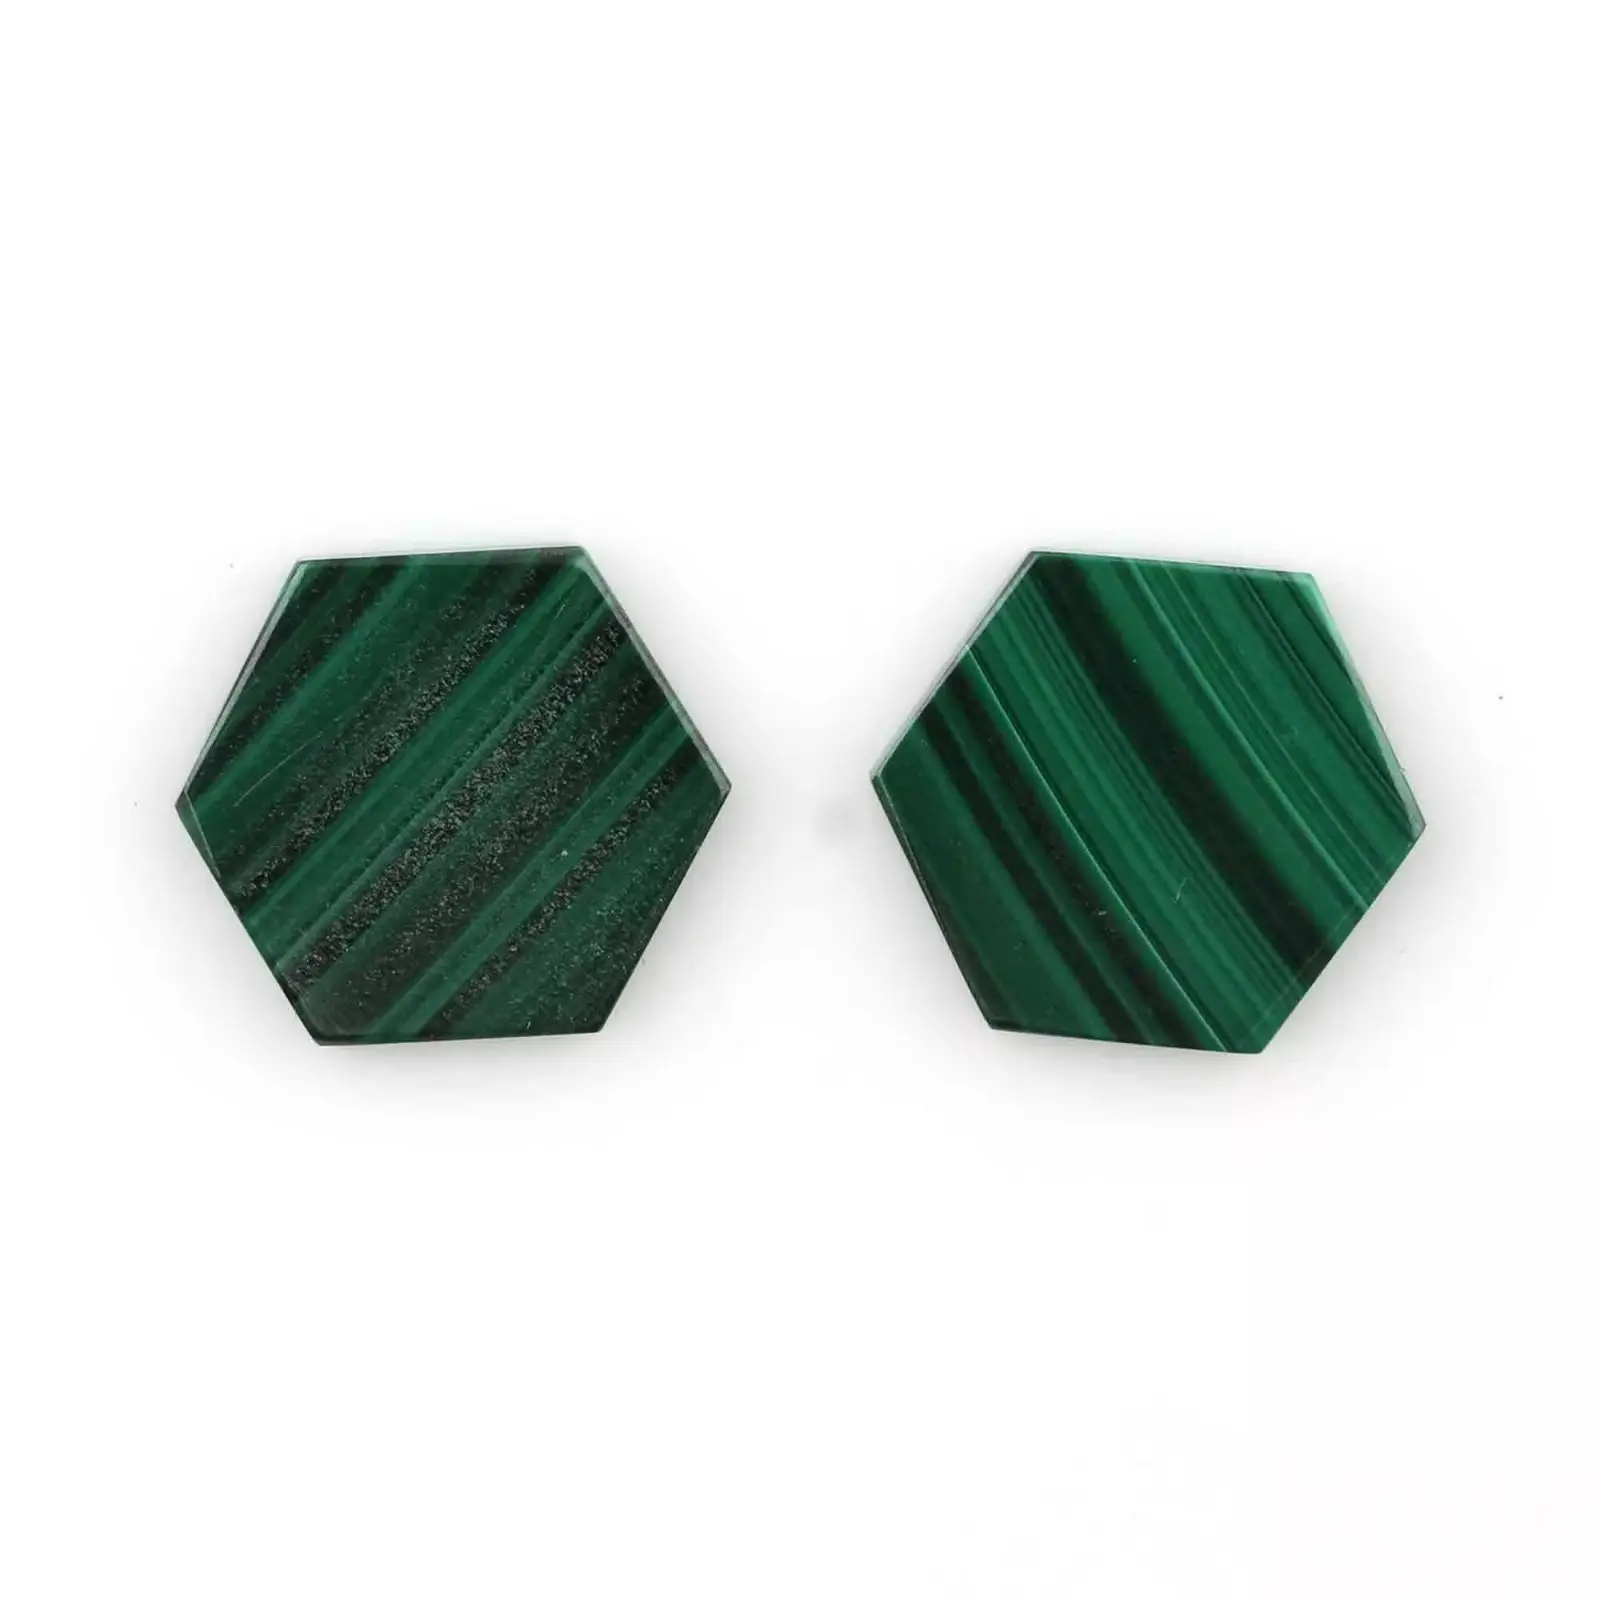 Piedra preciosa de malaquita con forma hexagonal plana de 12mm de alta calidad, verde oscuro, suave en ambos lados, calibrada suelta para la fabricación de joyas